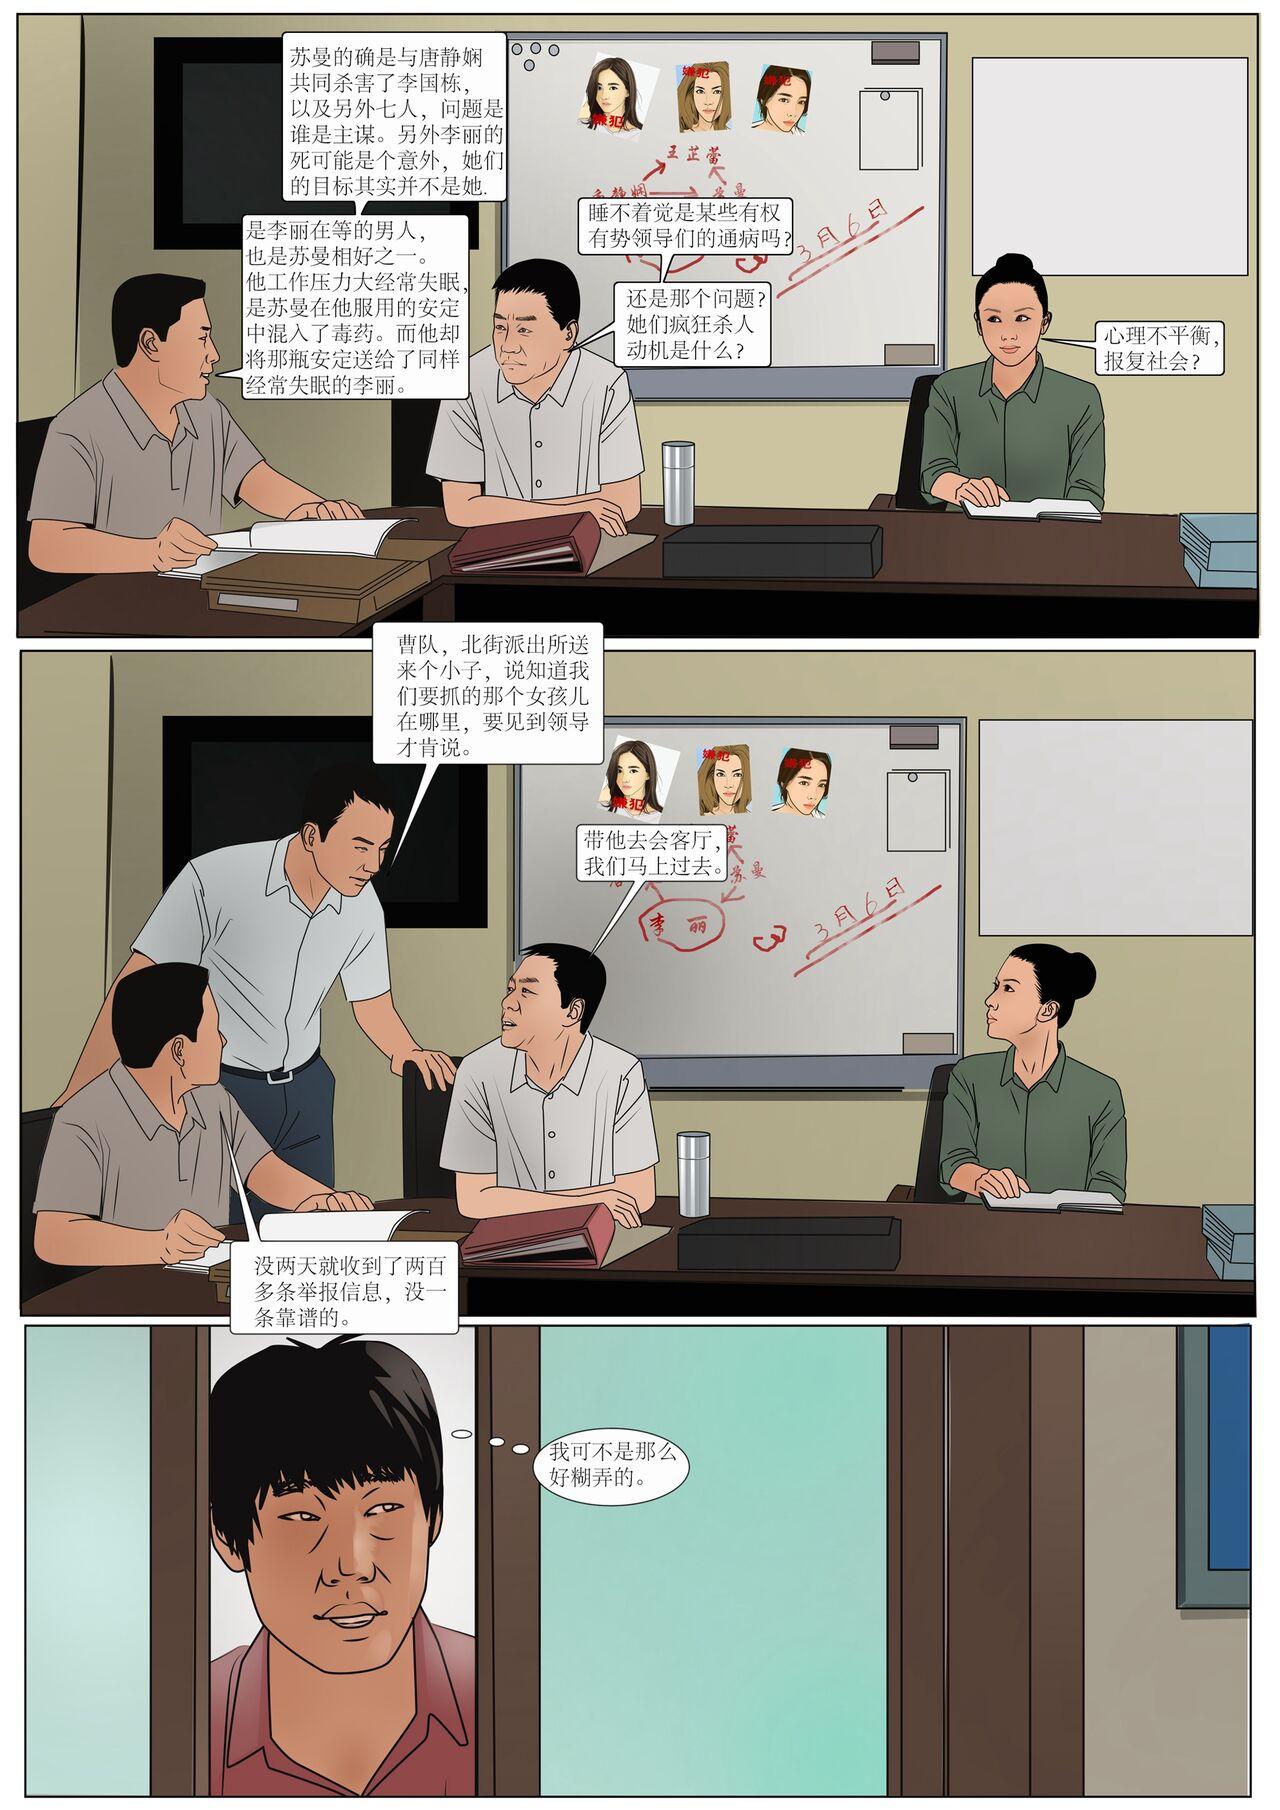 Behind 枫语漫画 Foryou 《极度重犯》第六话 Three Female Prisoners 6 Chinese Hot Girl - Page 11